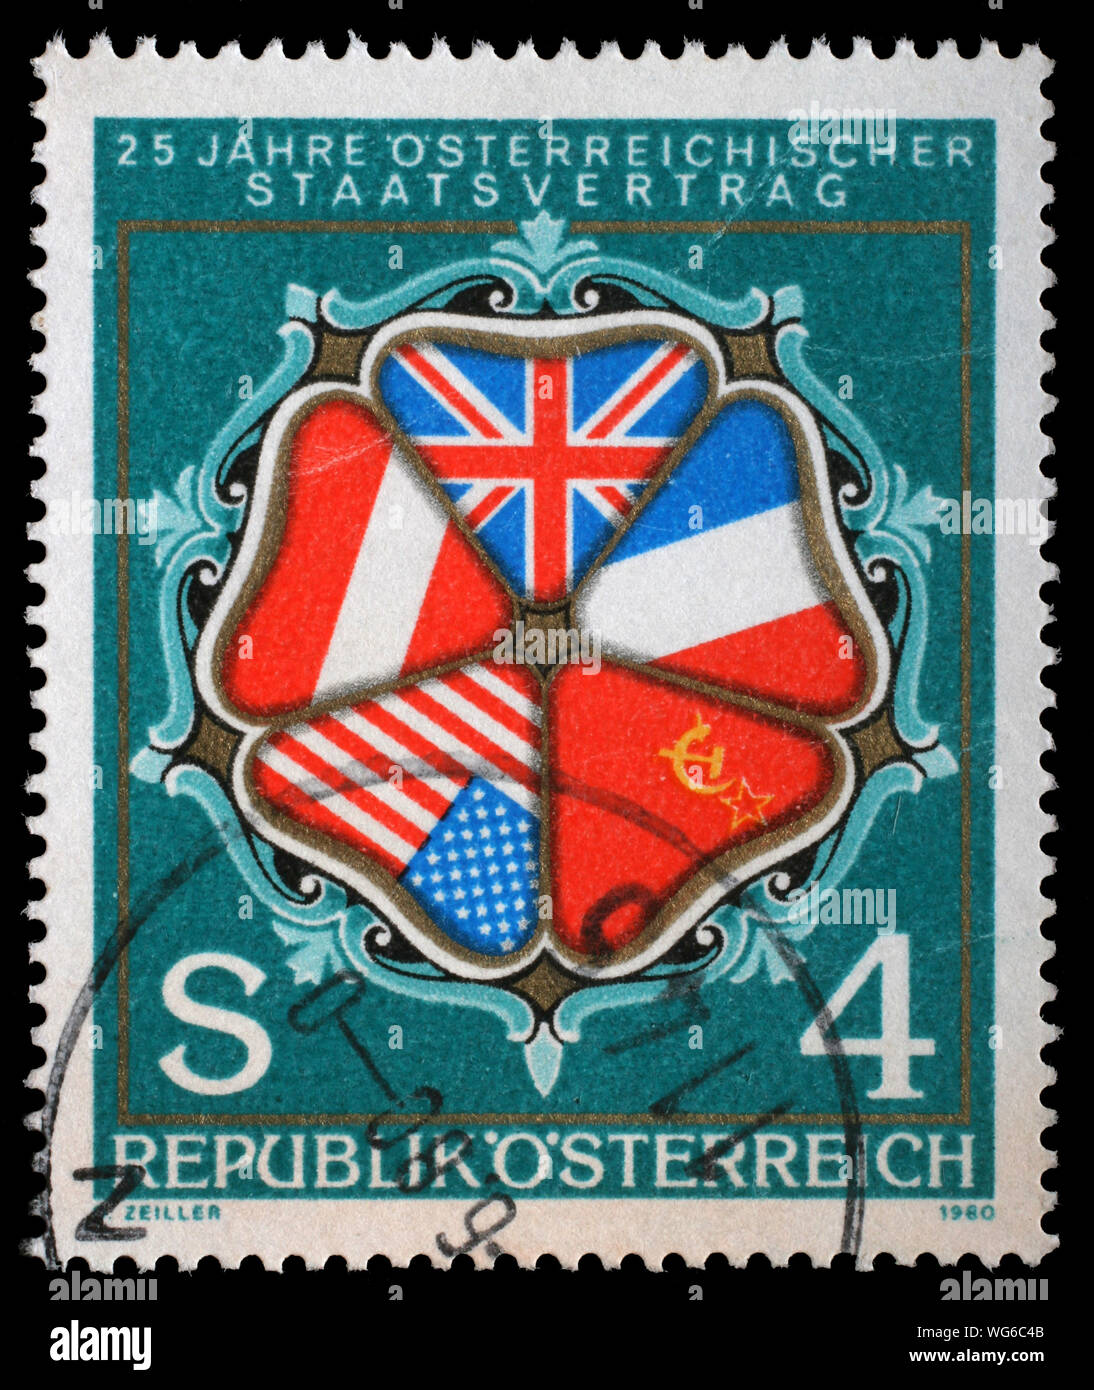 Timbro rilasciato in Austria mostra il venticinquesimo anniversario del trattato dello Stato austriaco, bandiere degli Stati contraenti in ornamento, circa 1980. Foto Stock